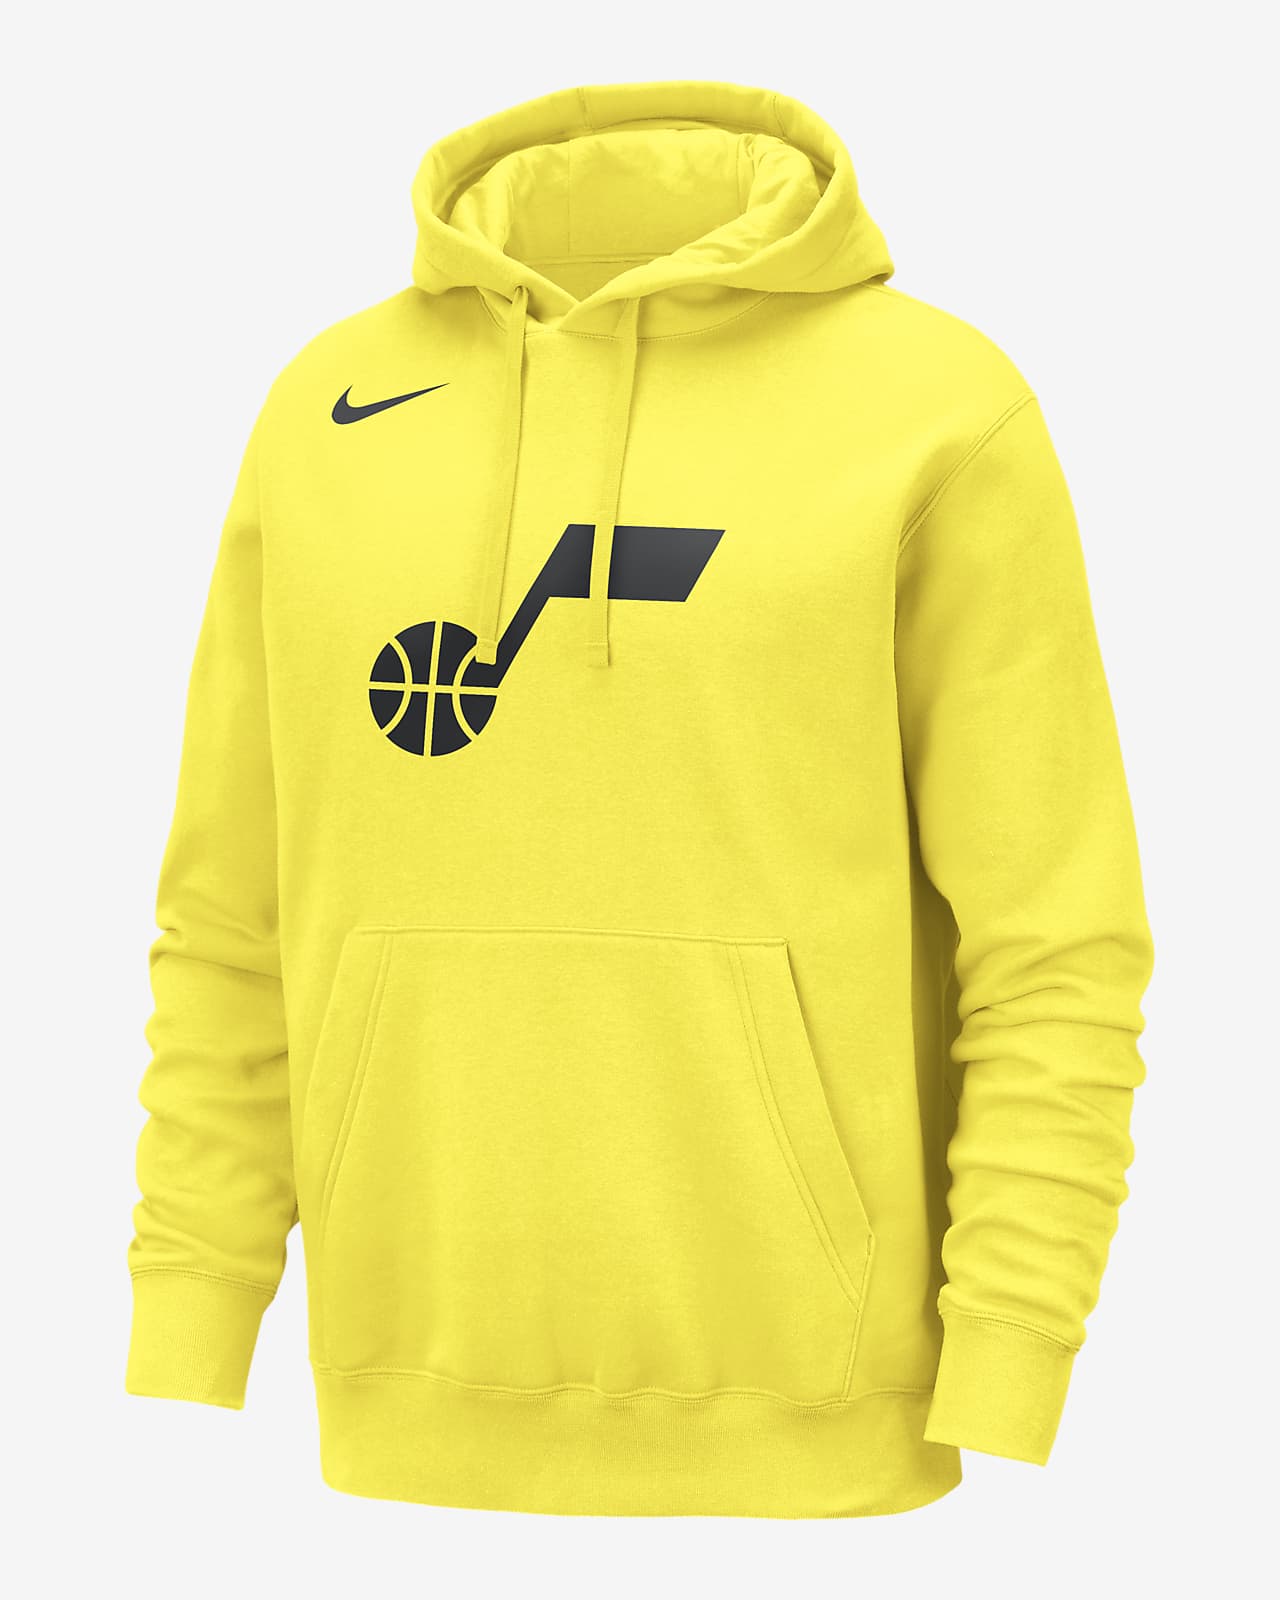 Utah Jazz Men's Nike NBA Pullover Hoodie. Nike LU